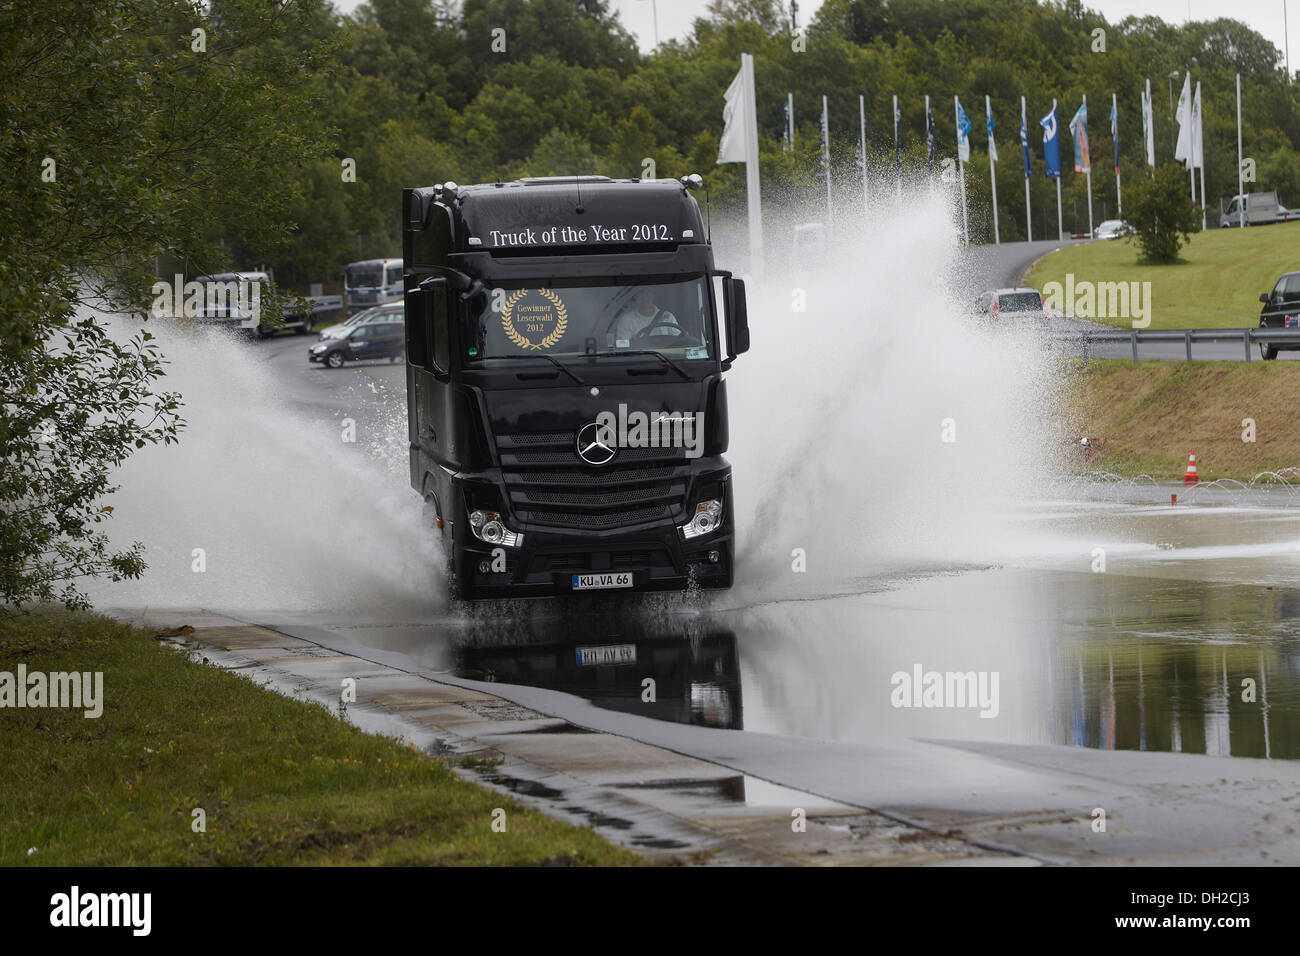 La formation en matière de sécurité pour les camions, les camions Grand Prix 2012, Nürburgring, Rhénanie-Palatinat Banque D'Images